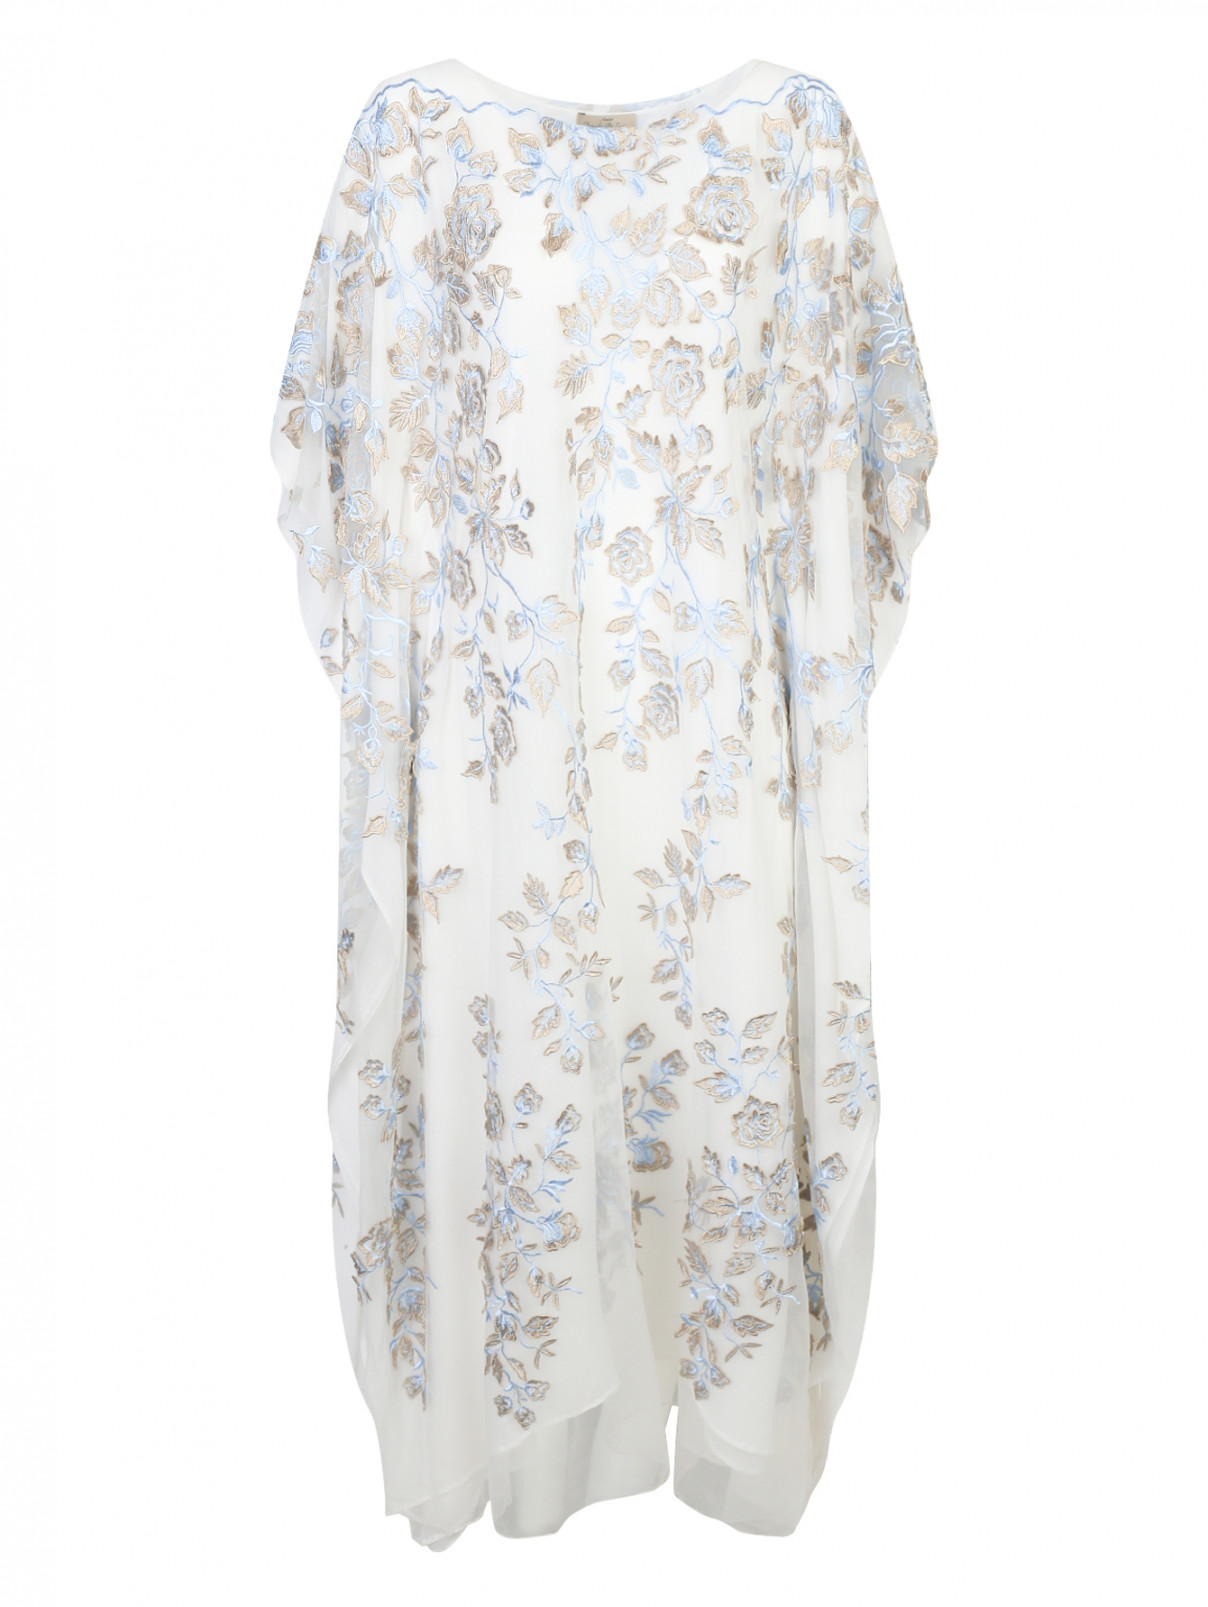 Платье свободного кроя из шелка с аппликацией Daniela de Souza  –  Общий вид  – Цвет:  Белый